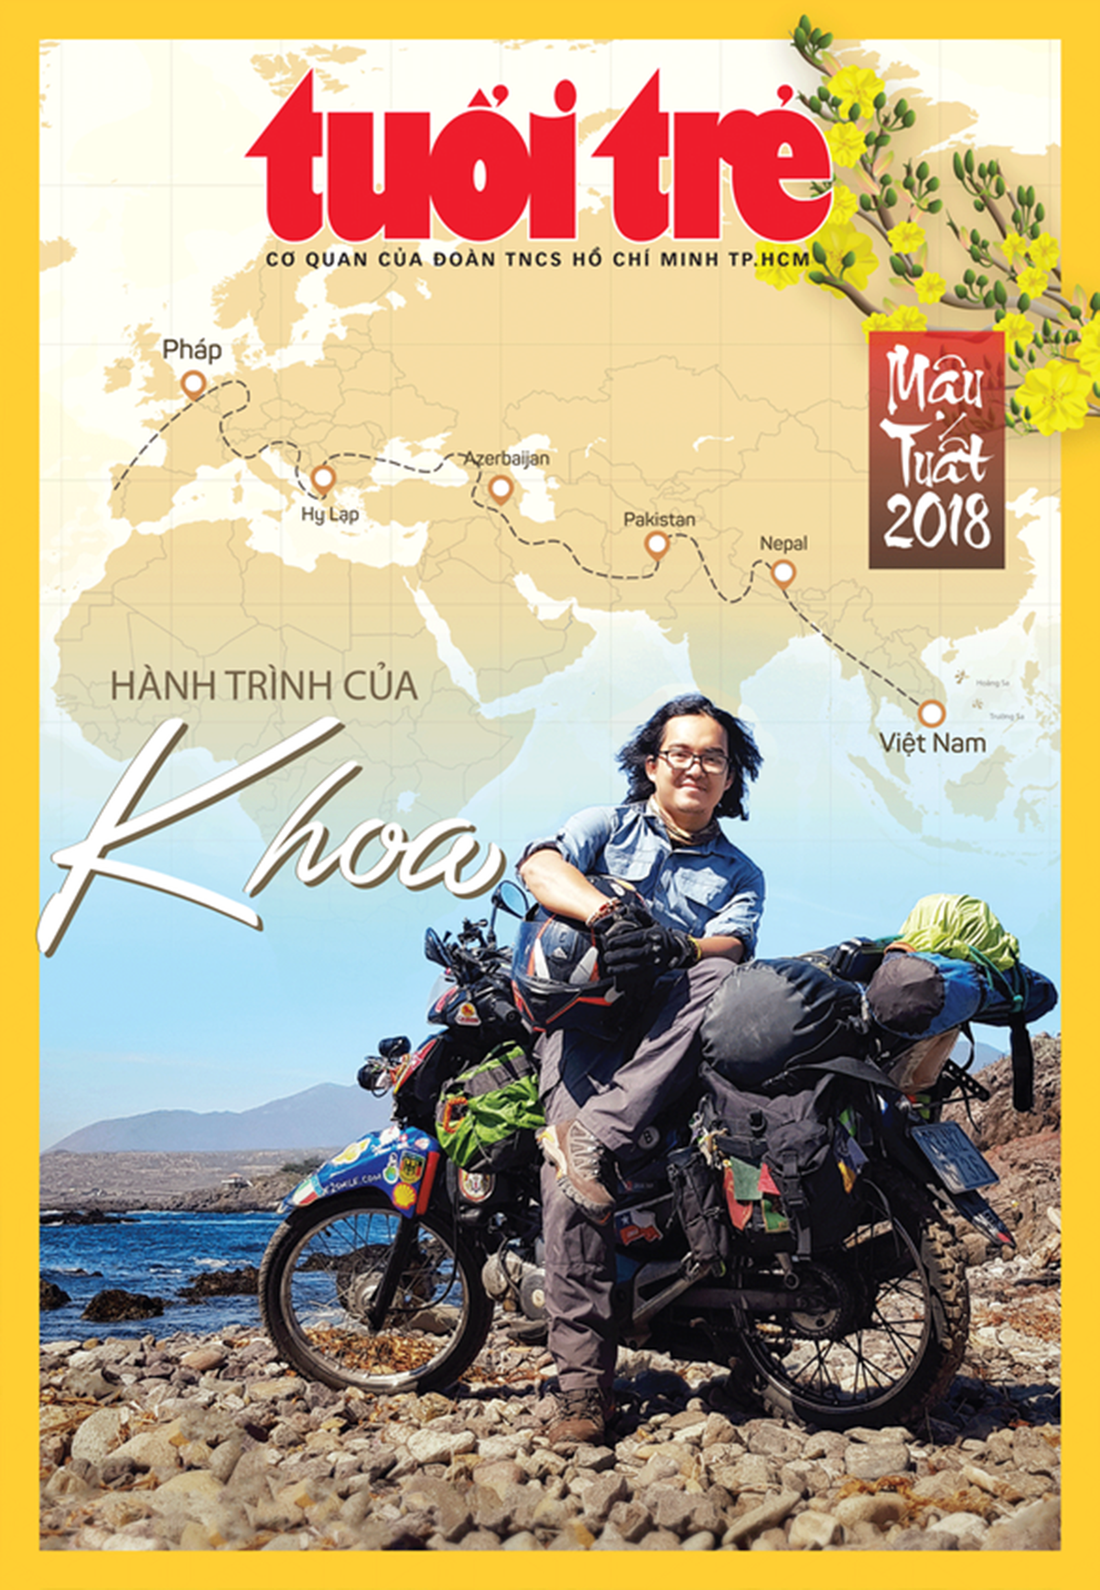 Chàng trai Việt đi xe máy vòng quanh thế giới: Học được muôn ngàn bài học ý nghĩa - Ảnh 6.